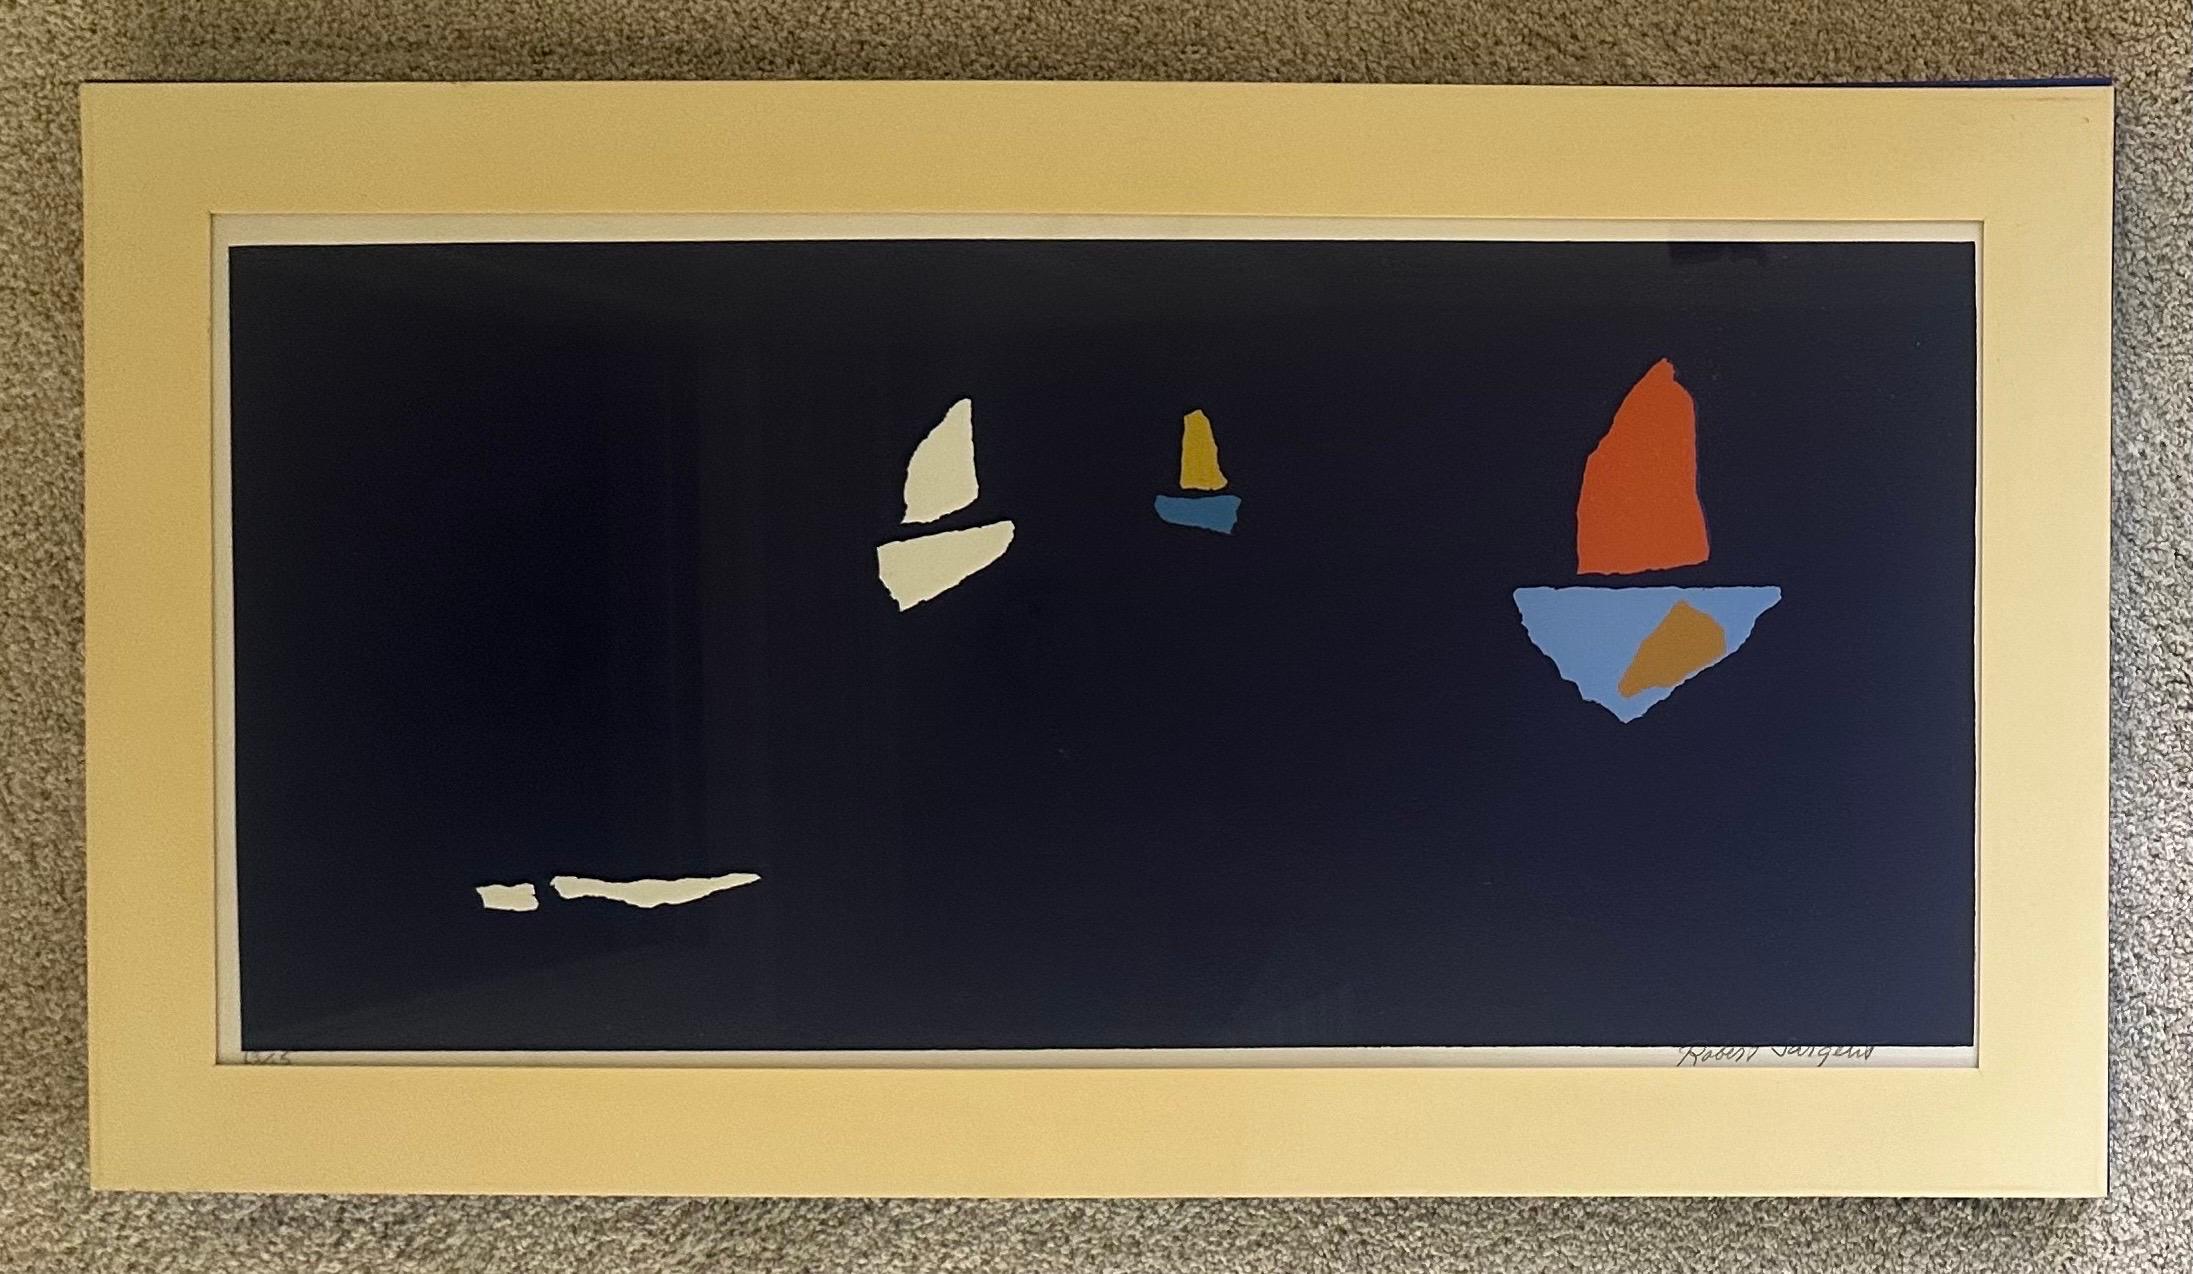 Abstrakte Serigrafie mit Segelbooten am Horizont von Robert Sargent, ca. 1970er Jahre. Das Werk ist rechts unten signiert und links unten als 63 von 65 nummeriert. Die Gesamtabmessungen sind 31,25